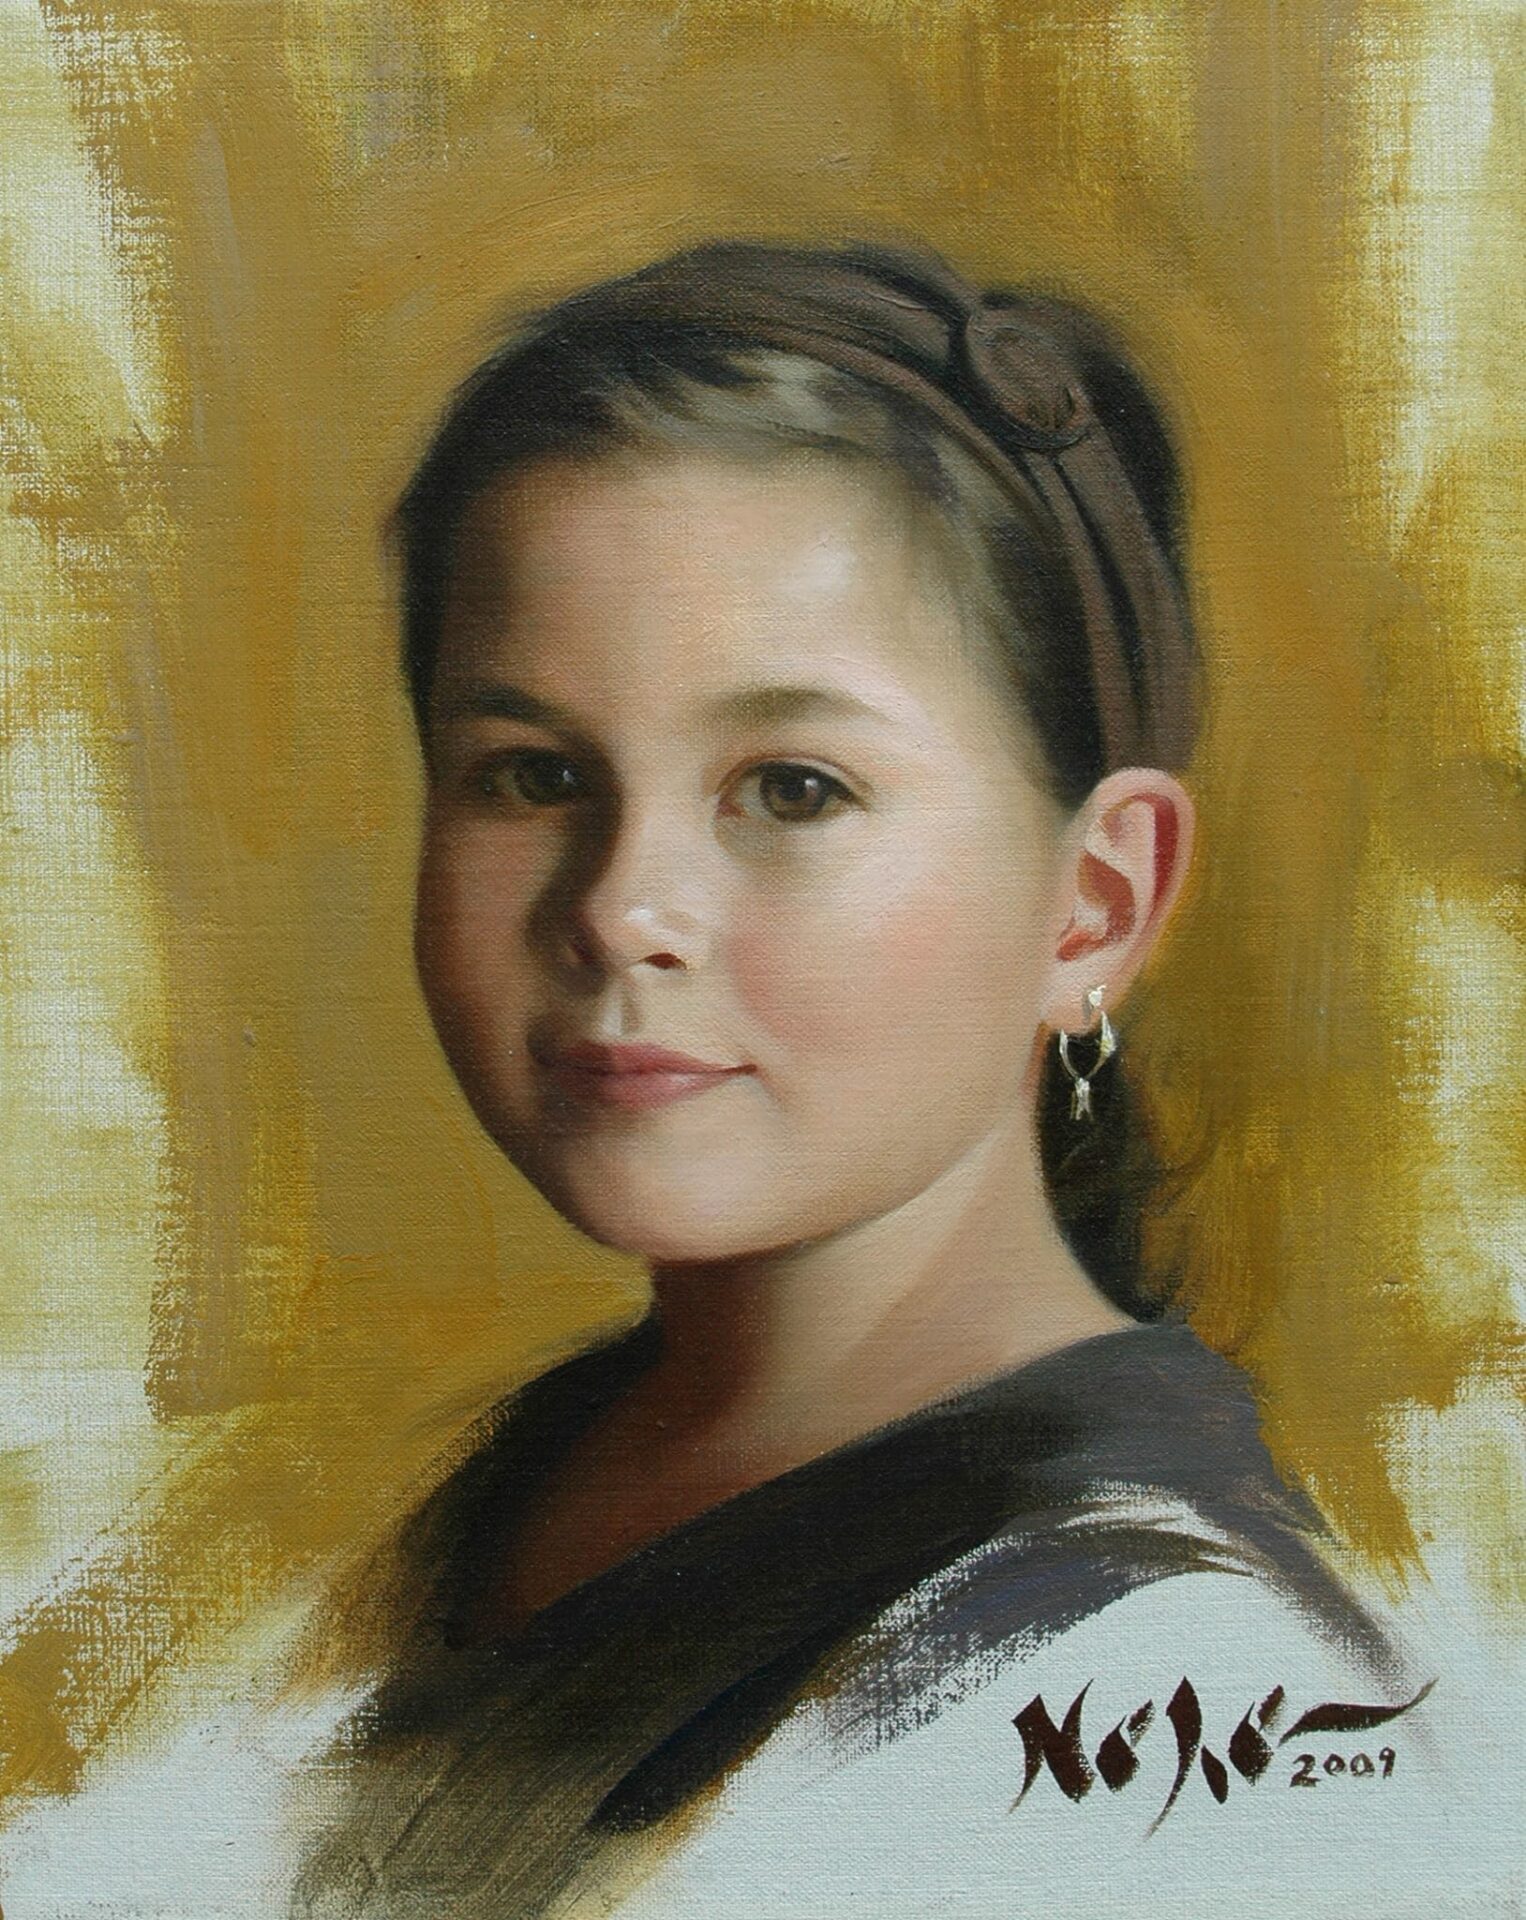 A modest-looking child’s portrait